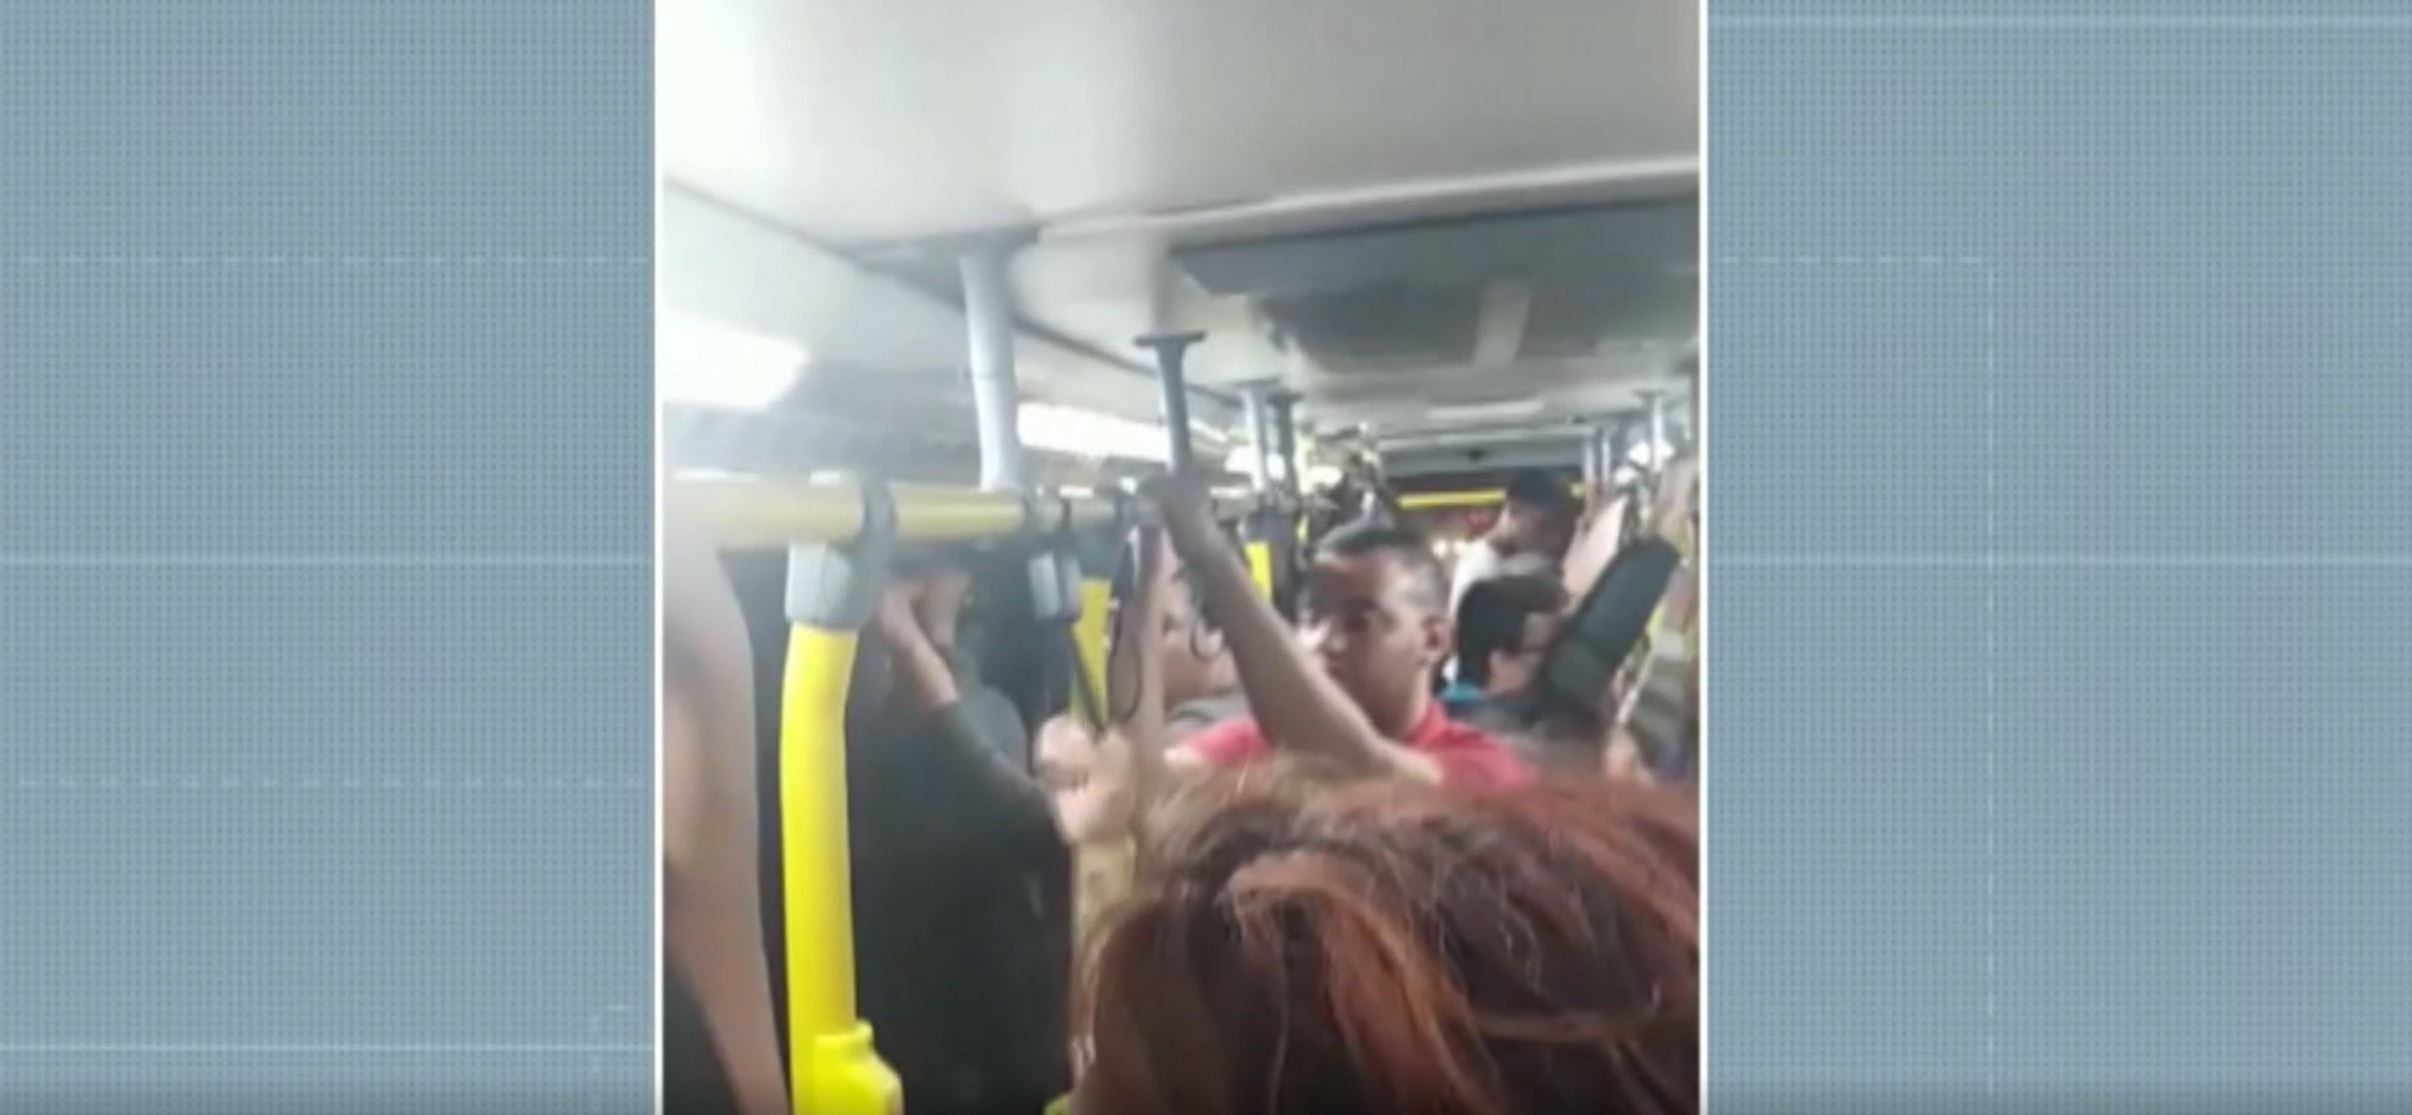 Passageiros reclamam de superlotação e demora em ônibus metropolitanos da região de Campinas